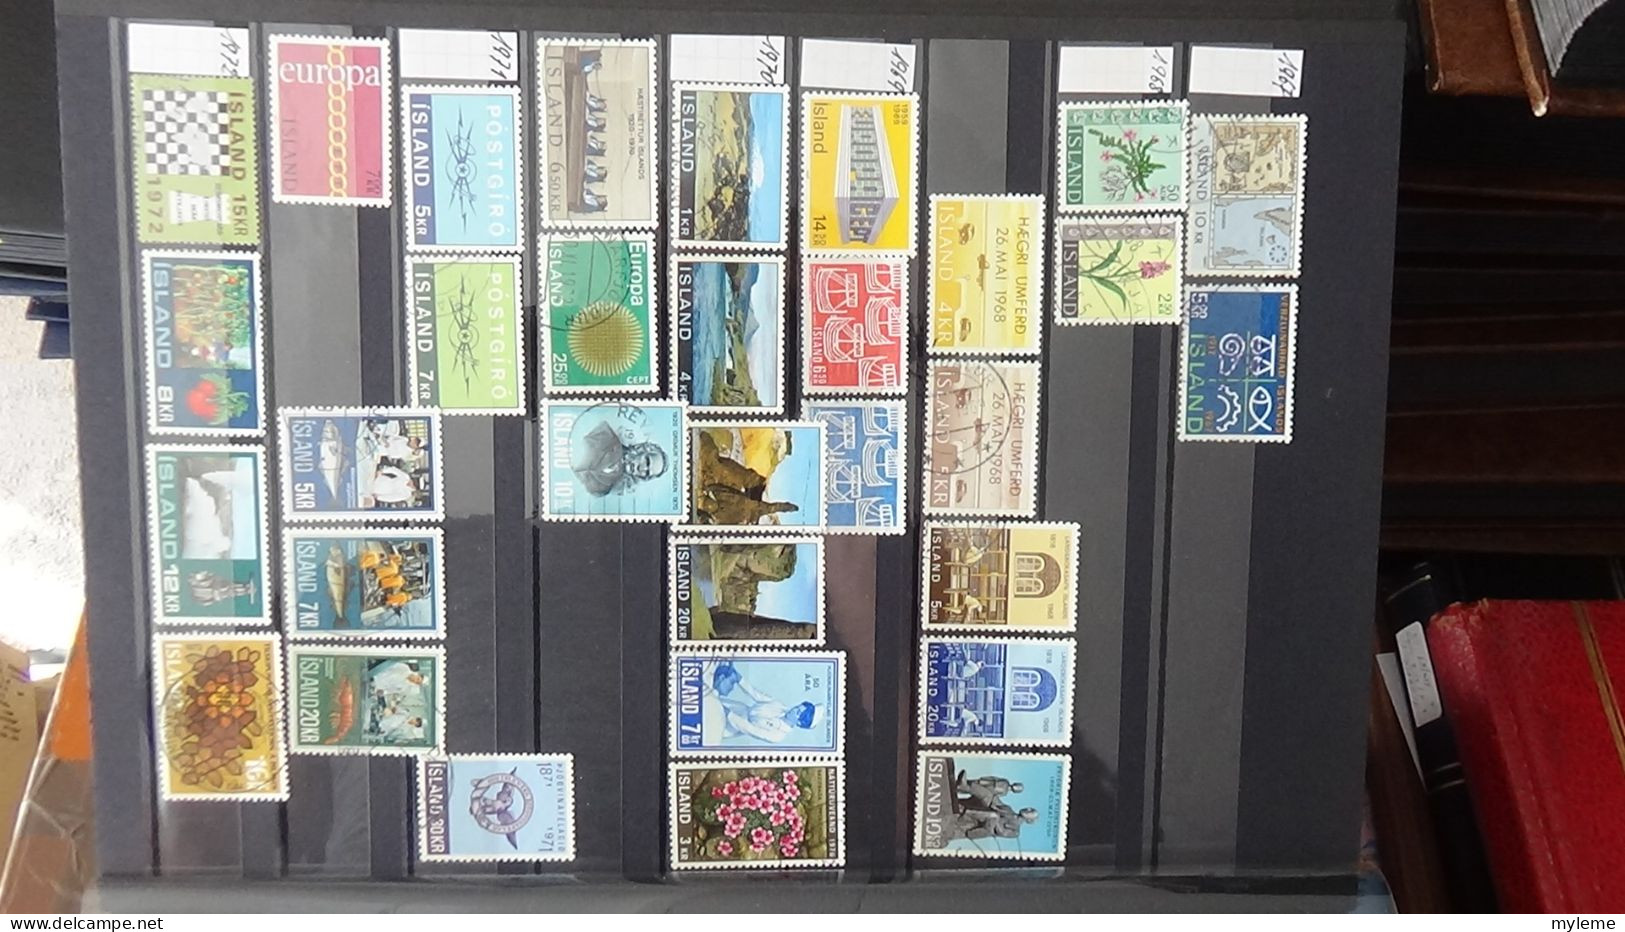 BF23 Ensemble de timbres de divers pays + bloc PEXIP N° 3 oblitéré. Petites taches hors timbres qui sont **. Signé